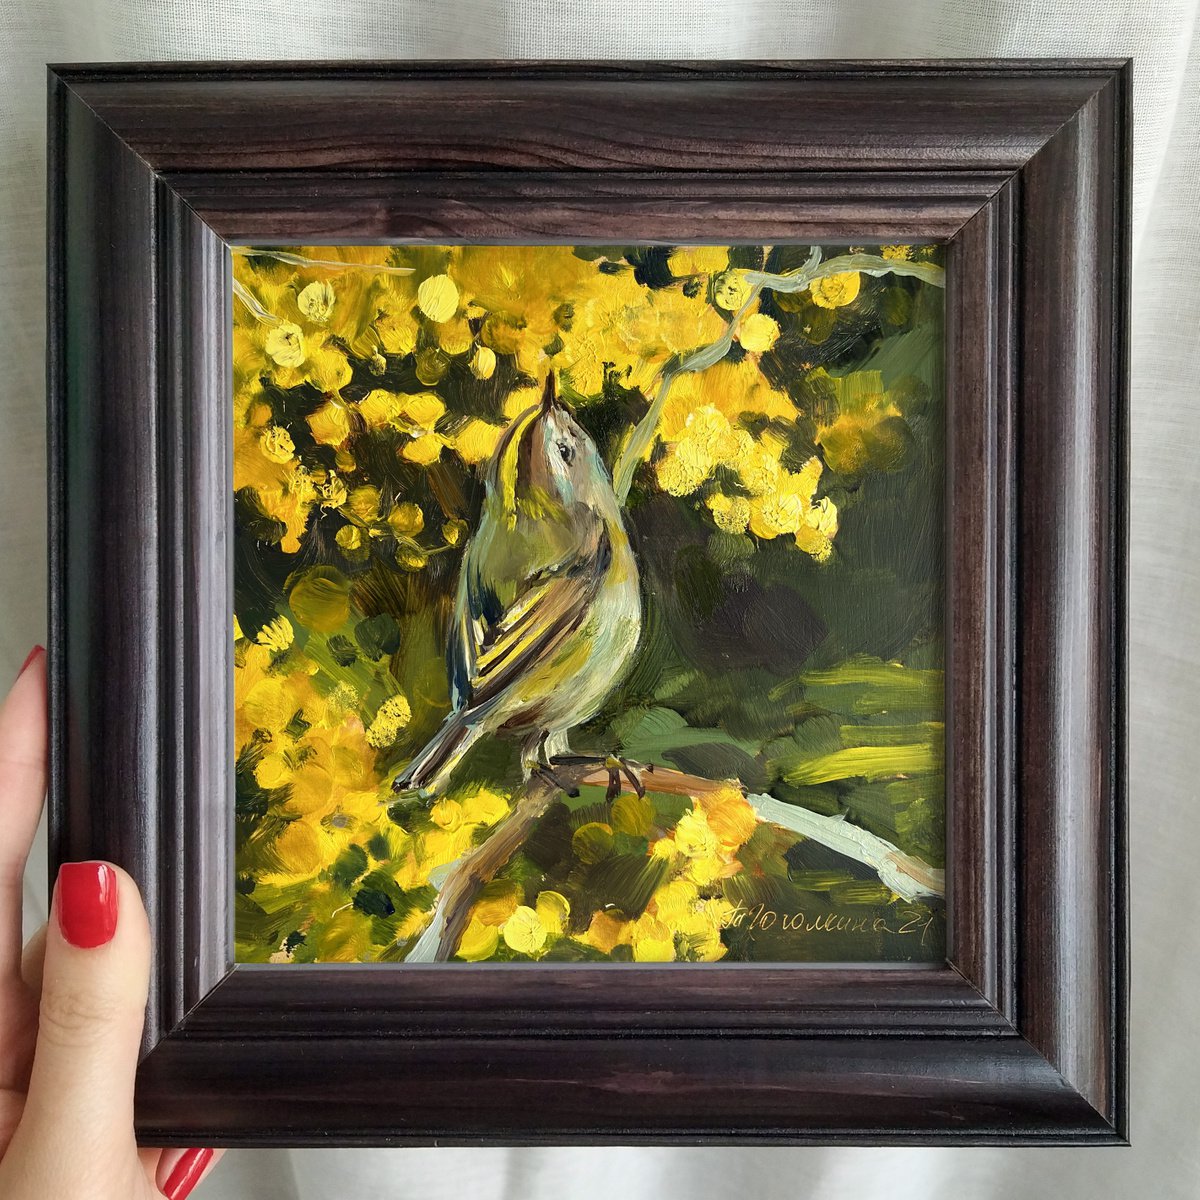 Goldcrest bird by Tatiana Gogolkina